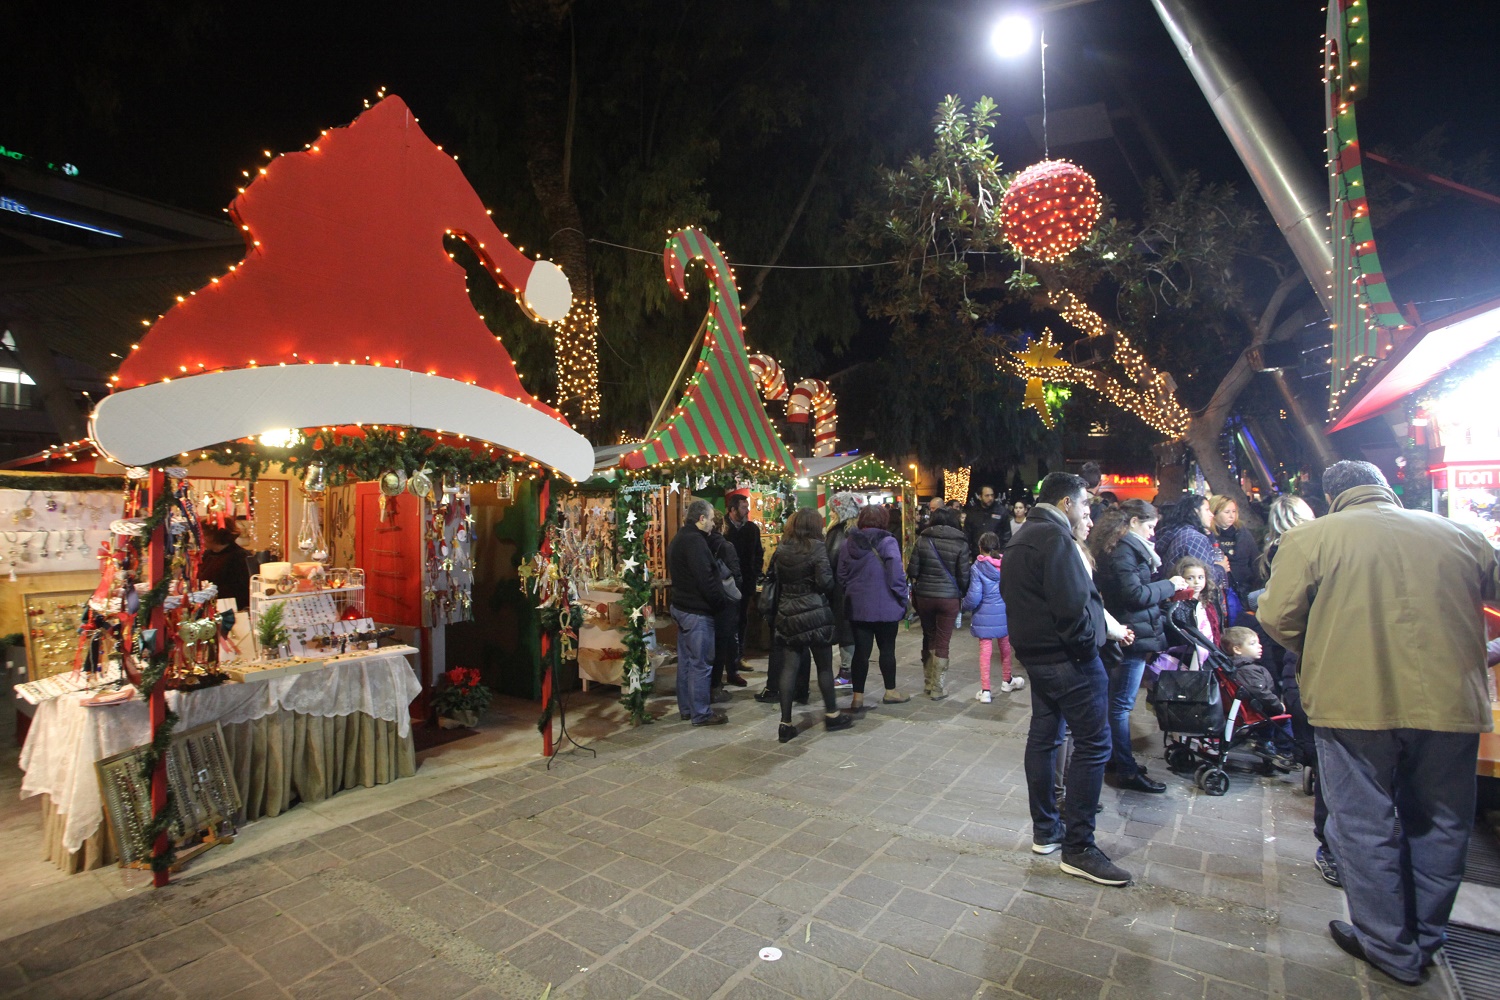 Οι Χριστουγεννιάτικες εκδηλώσεις στο Ηράκλειο την Παρασκευή 23 Δεκεμβρίου